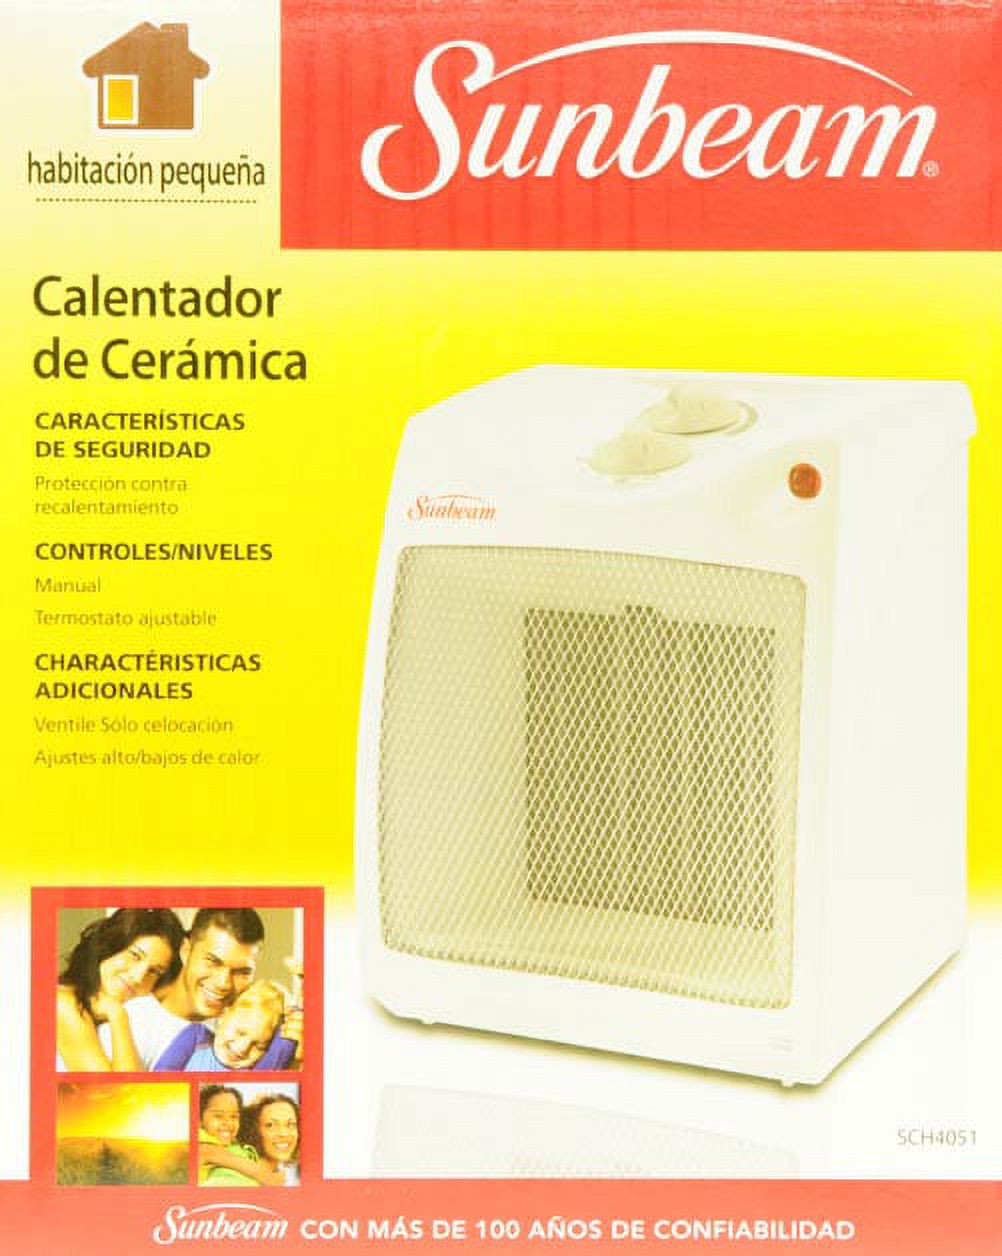 Sunbeam Electric Compact Ceramic Heater,  SCH4051-WM1 - image 5 of 6